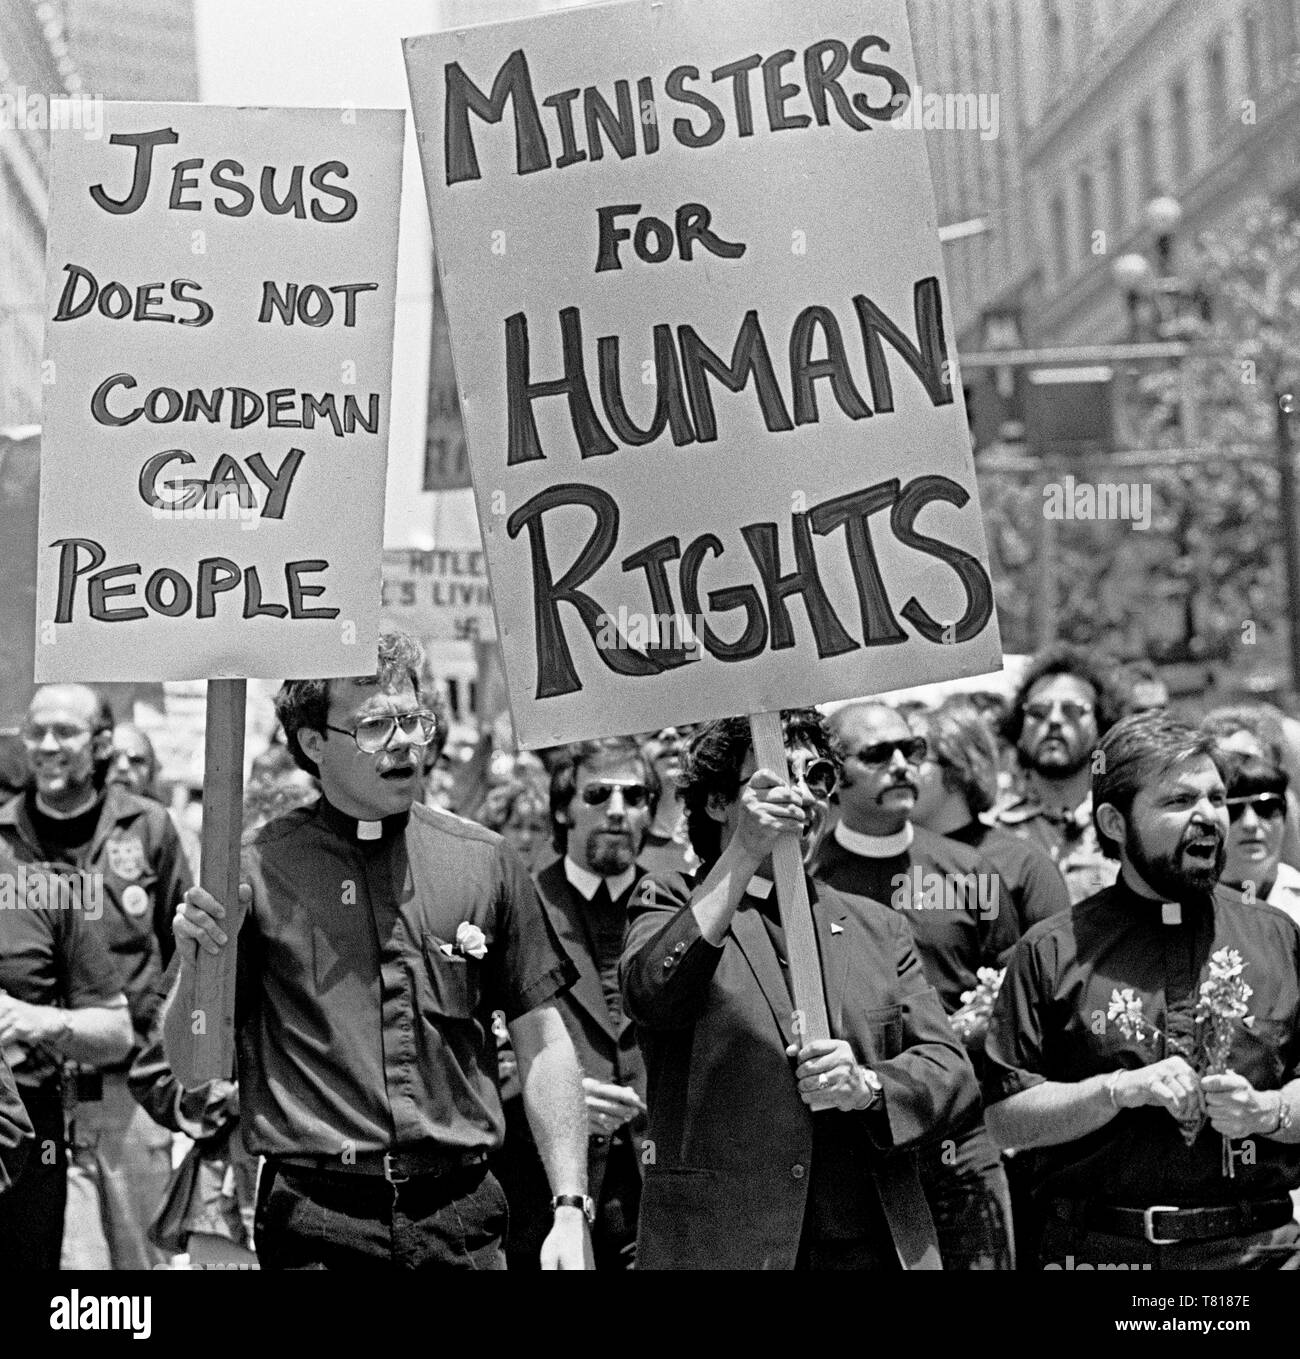 Les ministres ont pour les droits de l'homme mars dans la Parade de la Gay Pride à San Francisco, Juin 1977 Banque D'Images